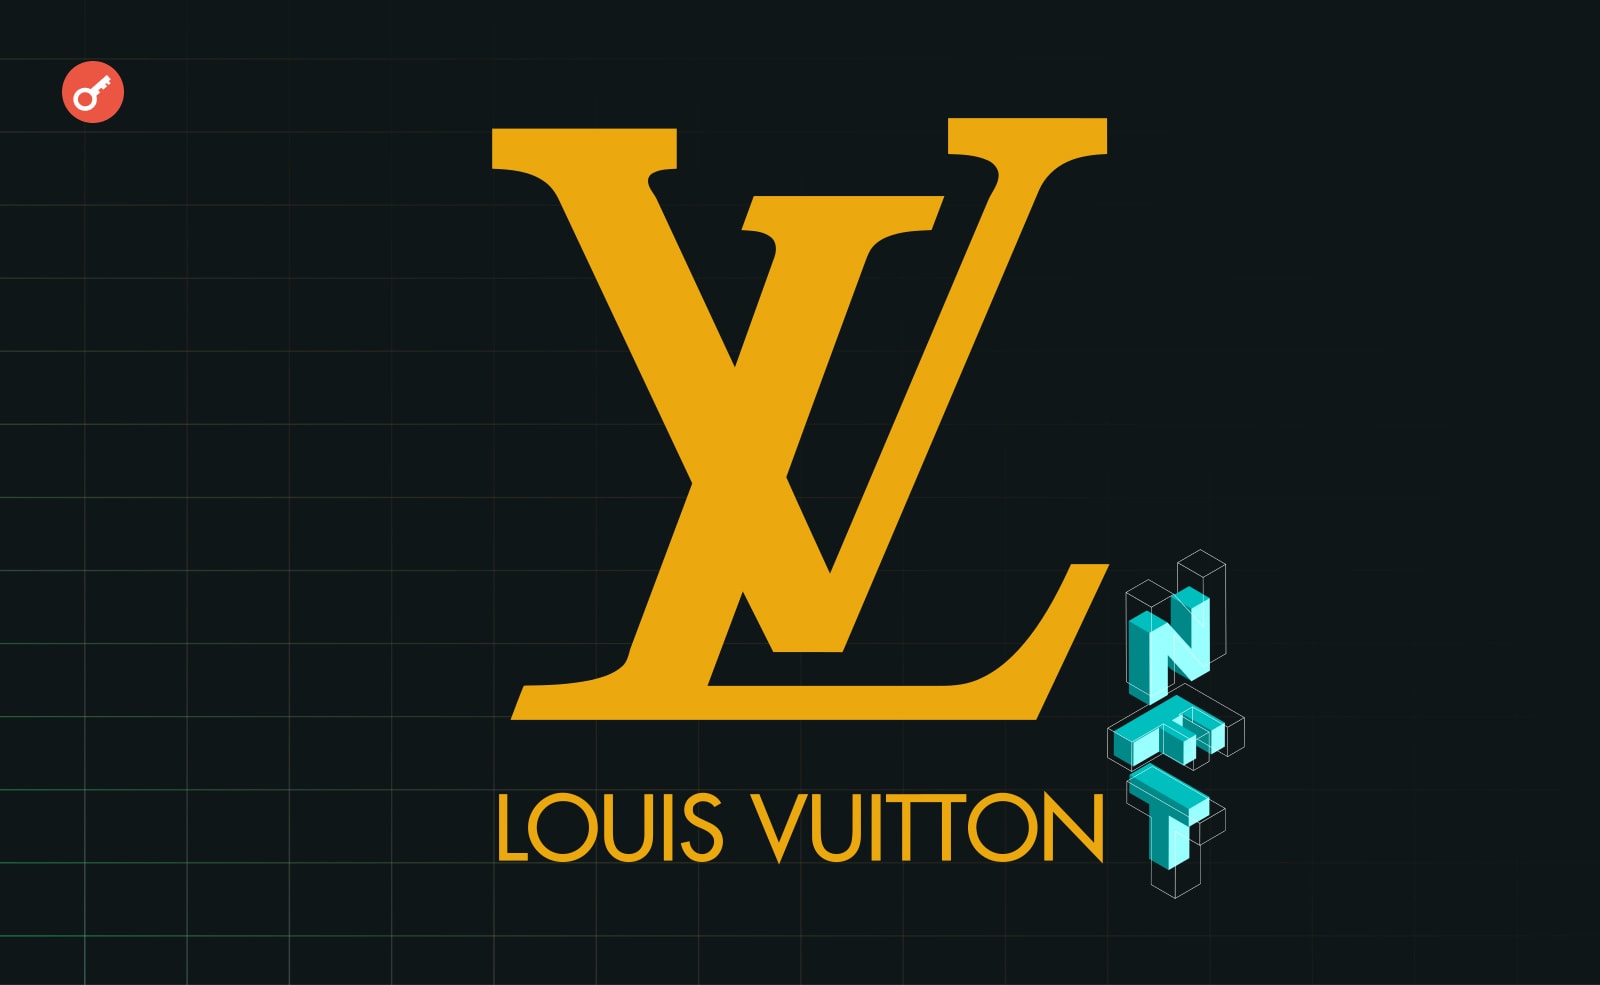 Louis Vuitton співпрацює з Яйої Кусама для запуску NFTs. Головний колаж новини.